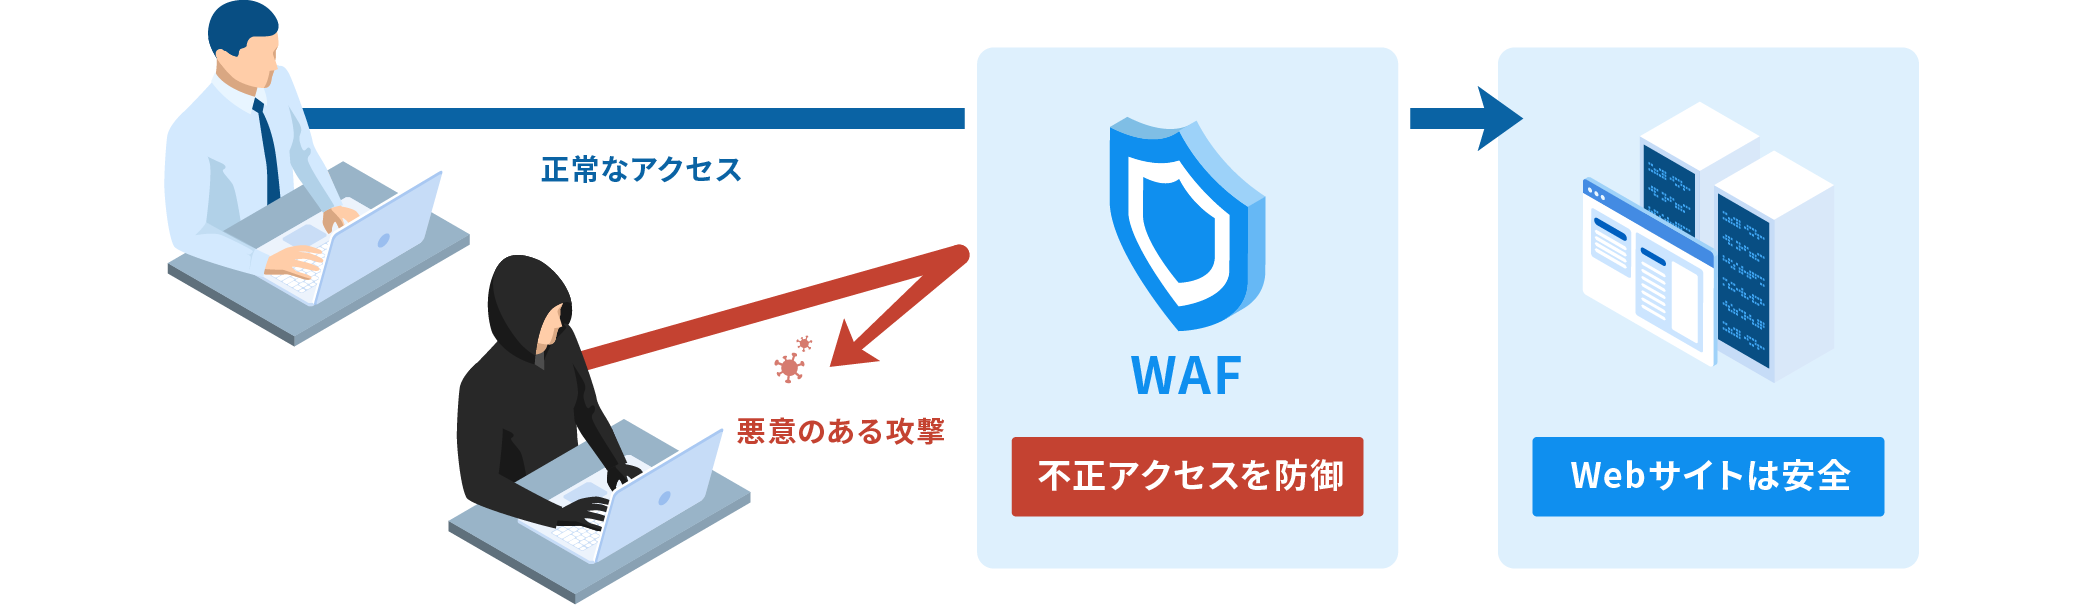 WAFの仕組みイメージ